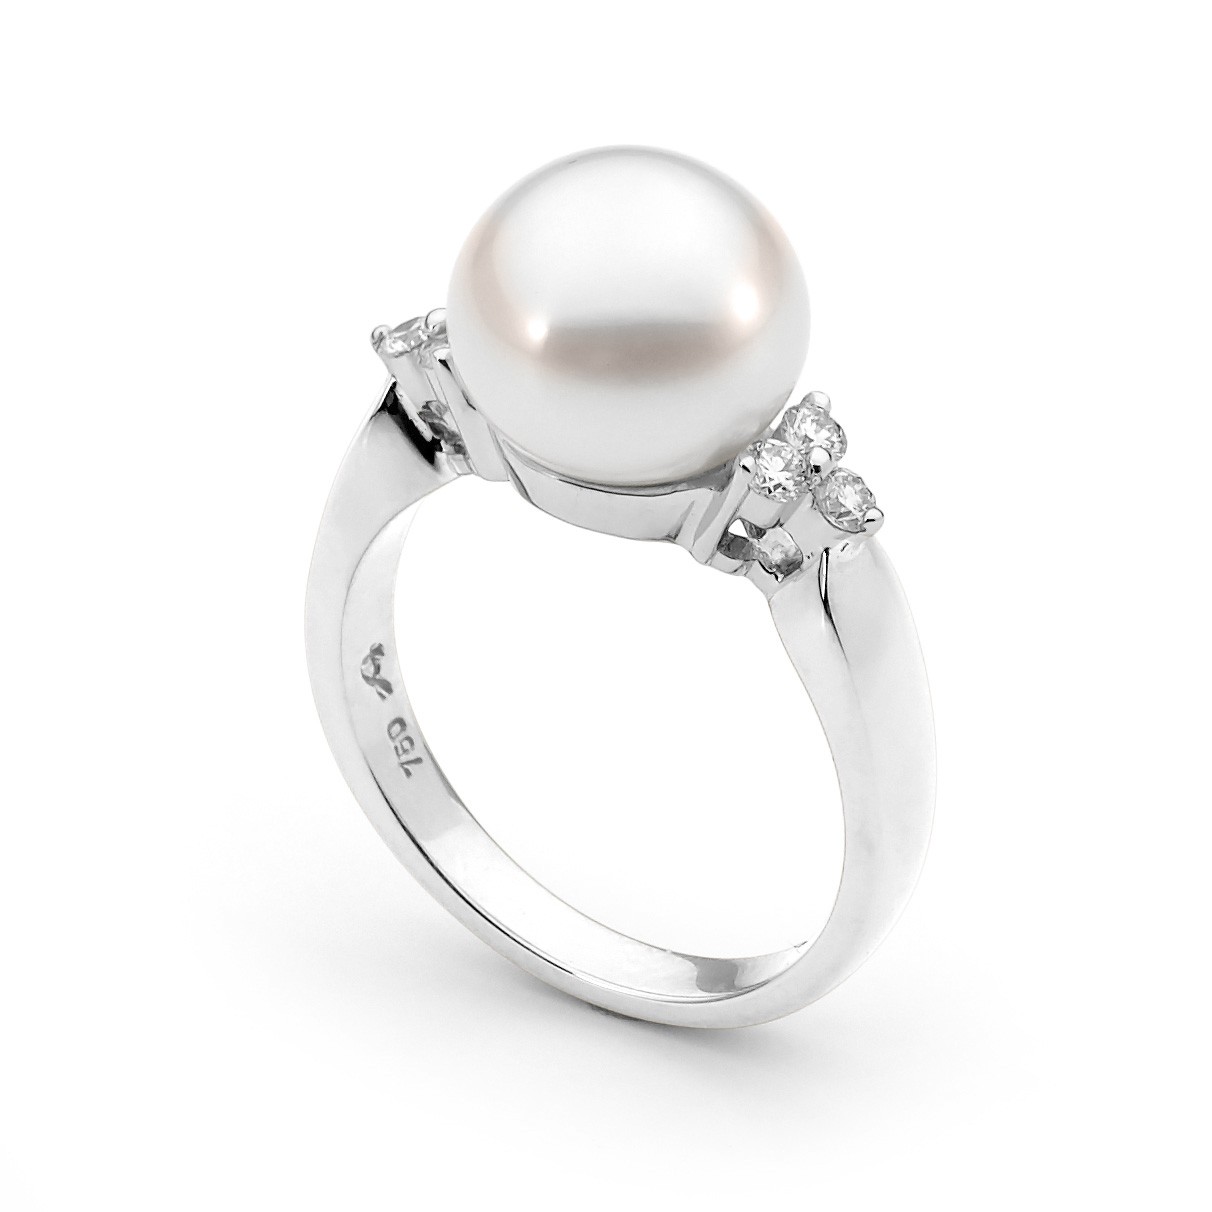 Trio Diamond and Pearl Ring - Allure South Sea Pearls